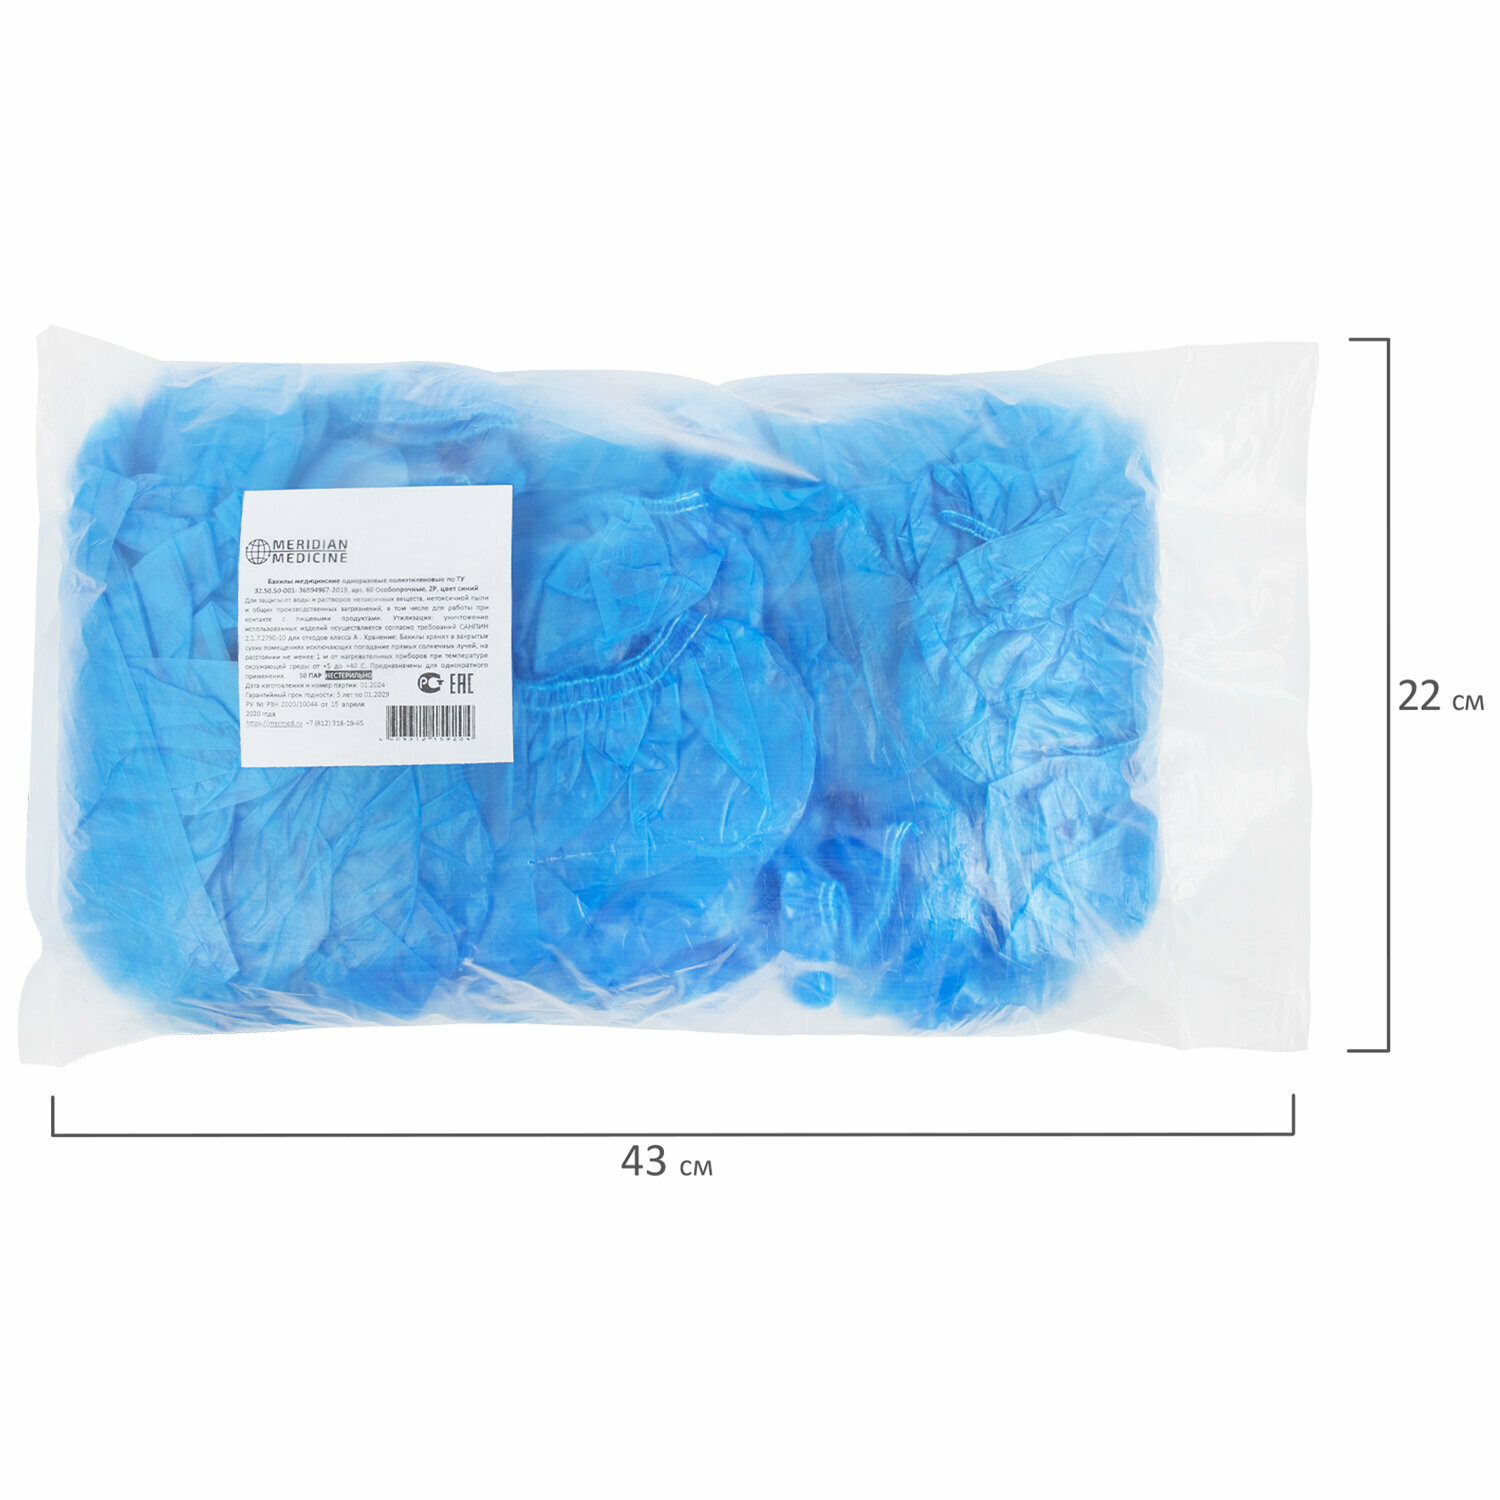 Бахилы MERIDIAN особо прочные, 6 грамм, синие, комплект 100 штук (50 пар), 40х15 см, 55 мкм упаковка 3 шт.